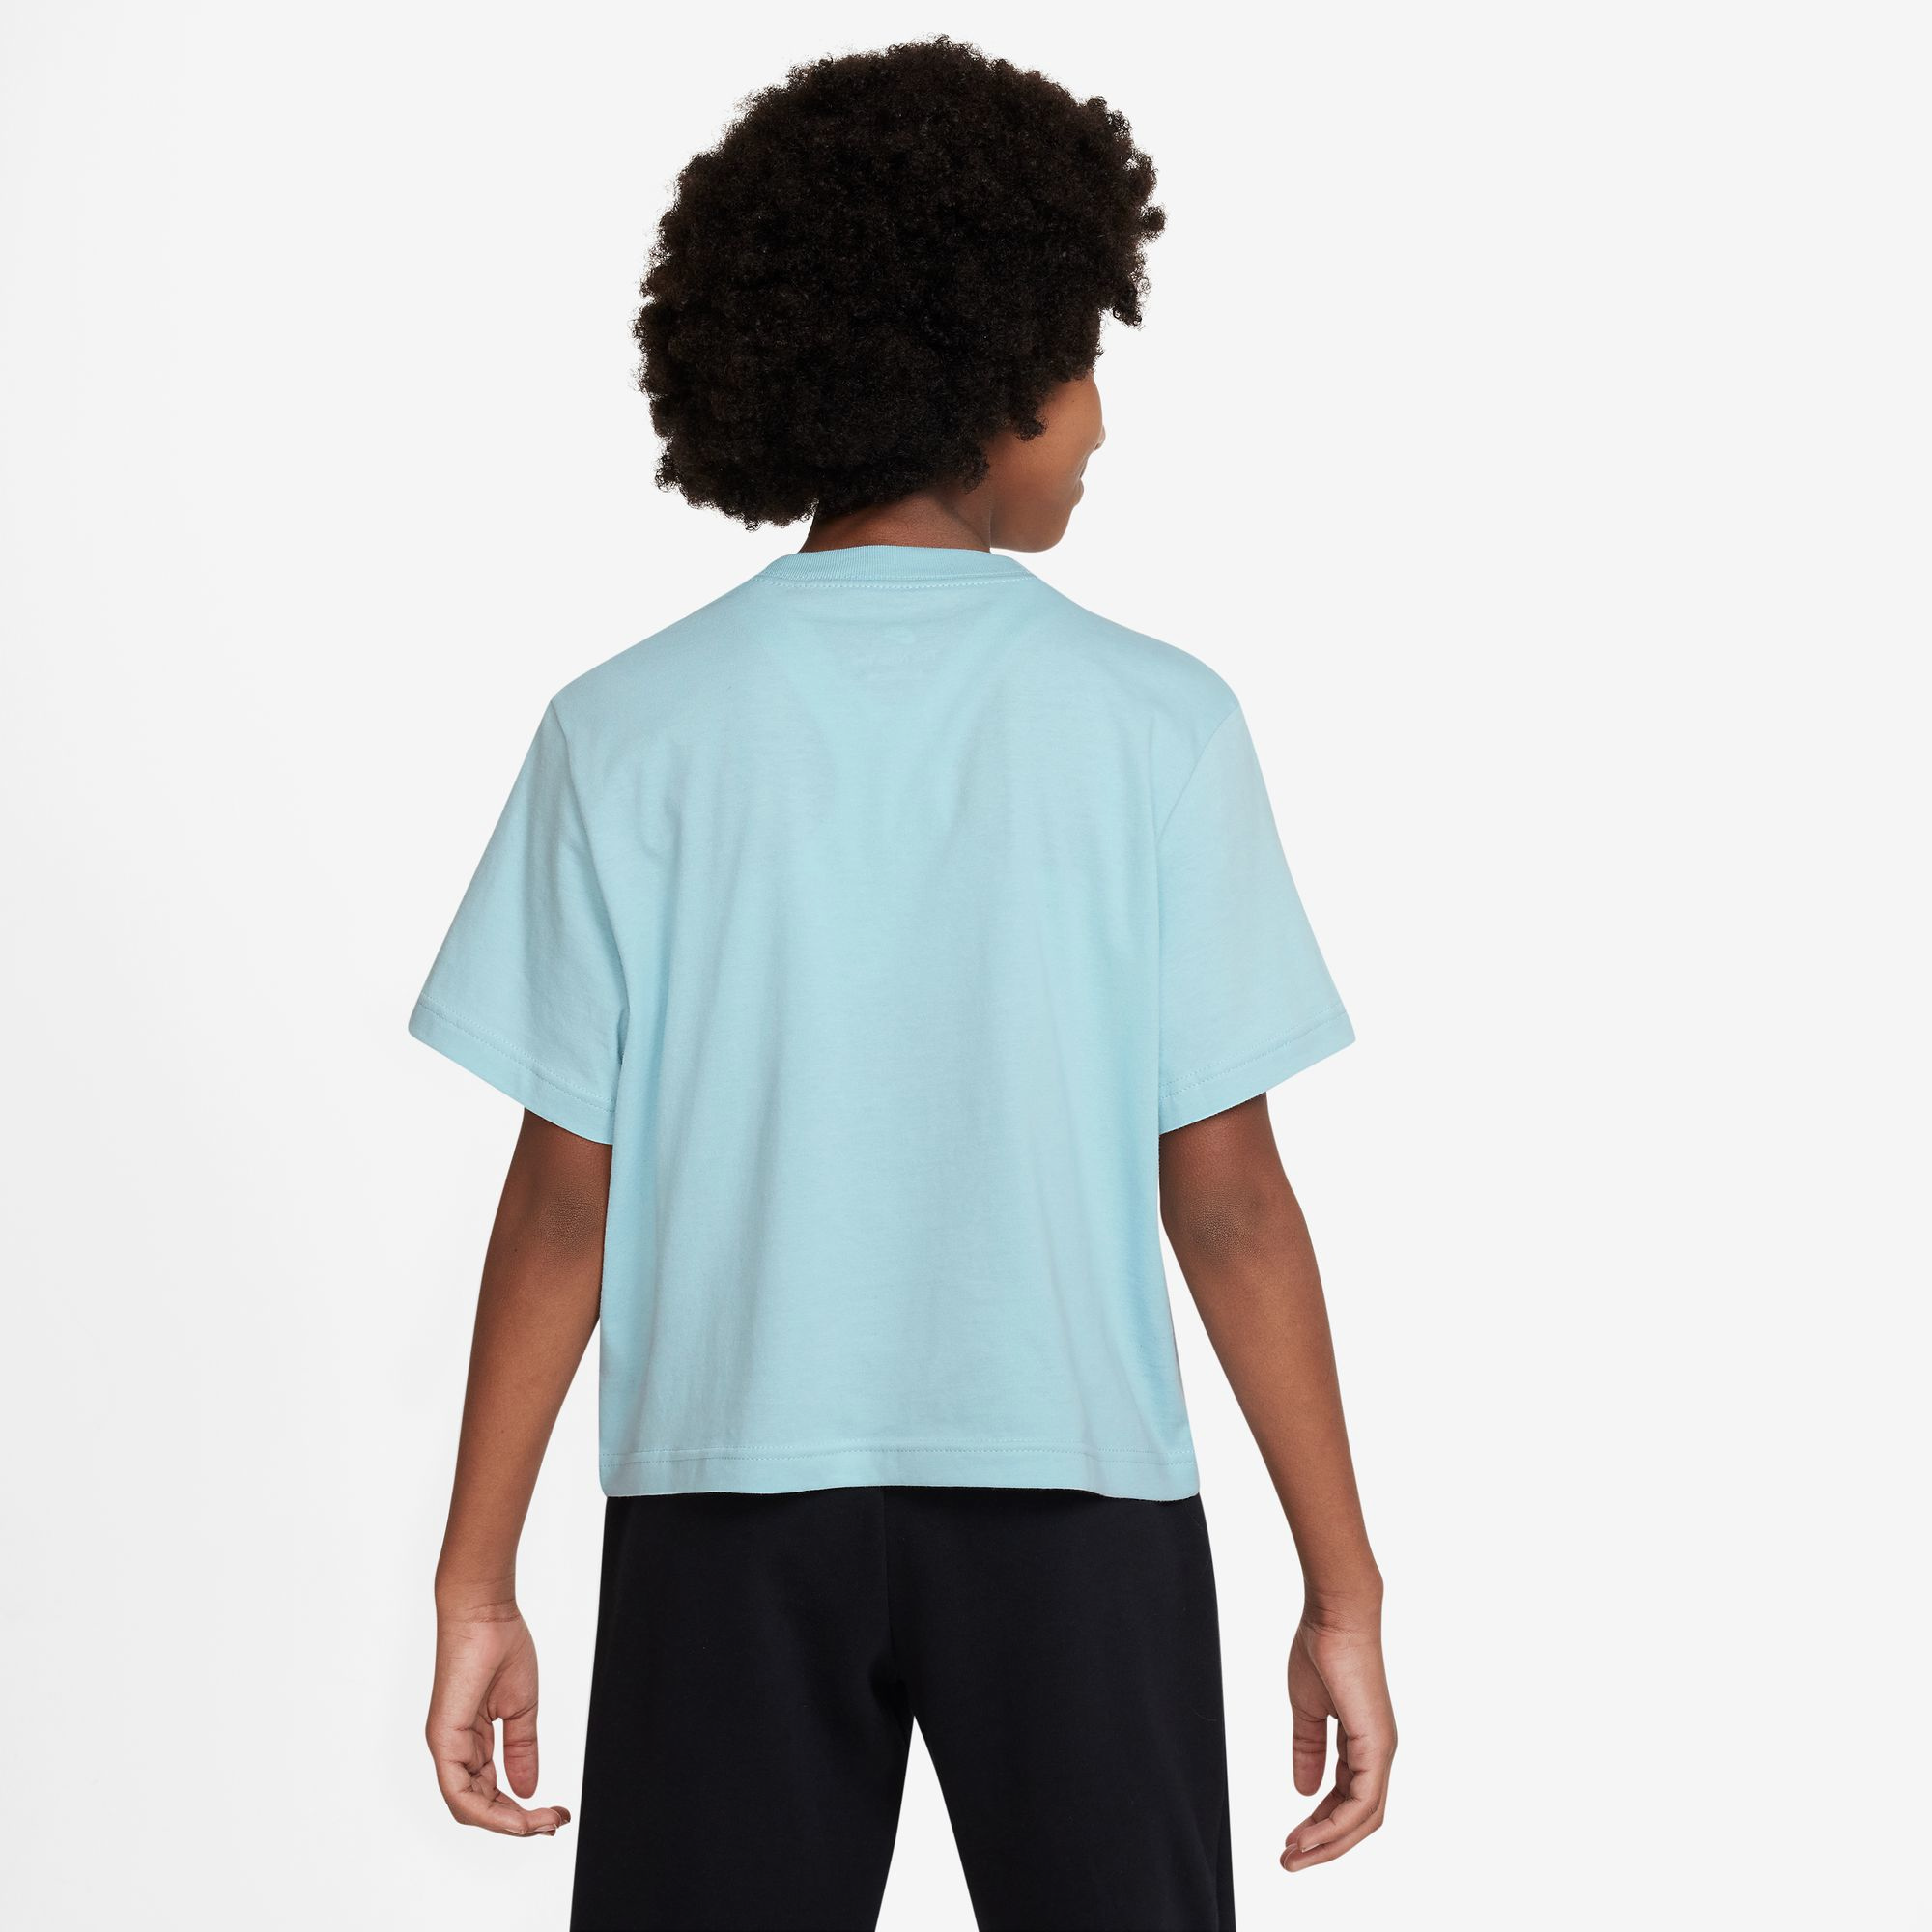 Nike Essential Boxy T-Shirt